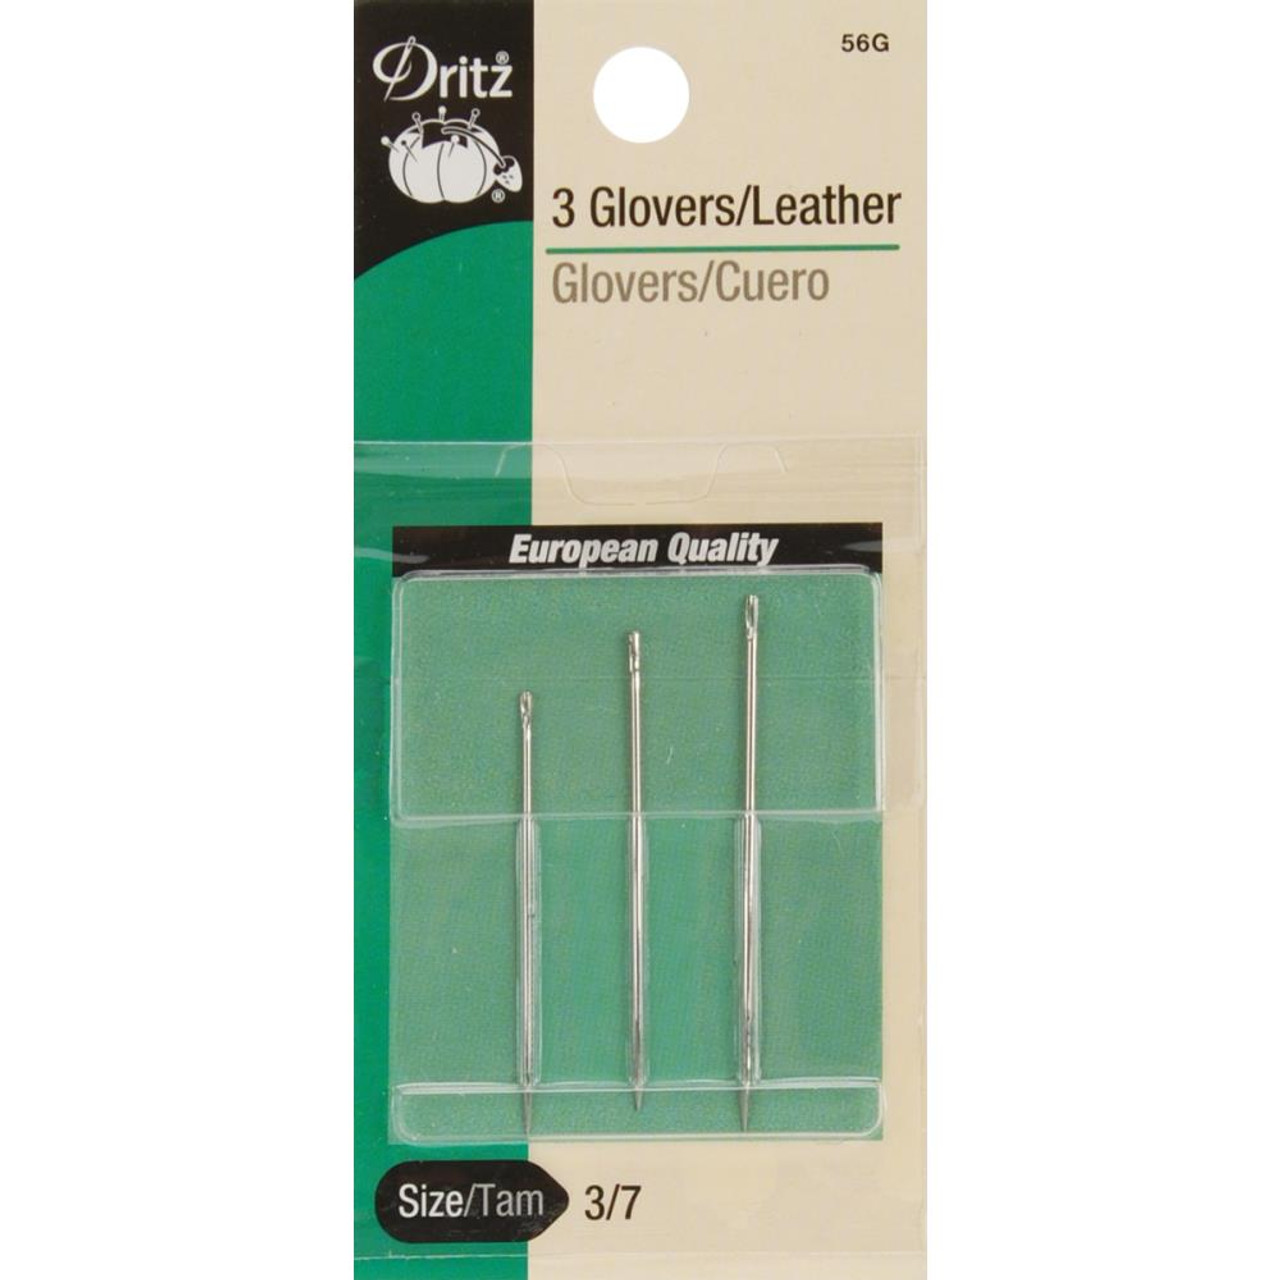  Dritz 3043 Quilter's Betweens Hand Needles, Size 10 (20-Count)